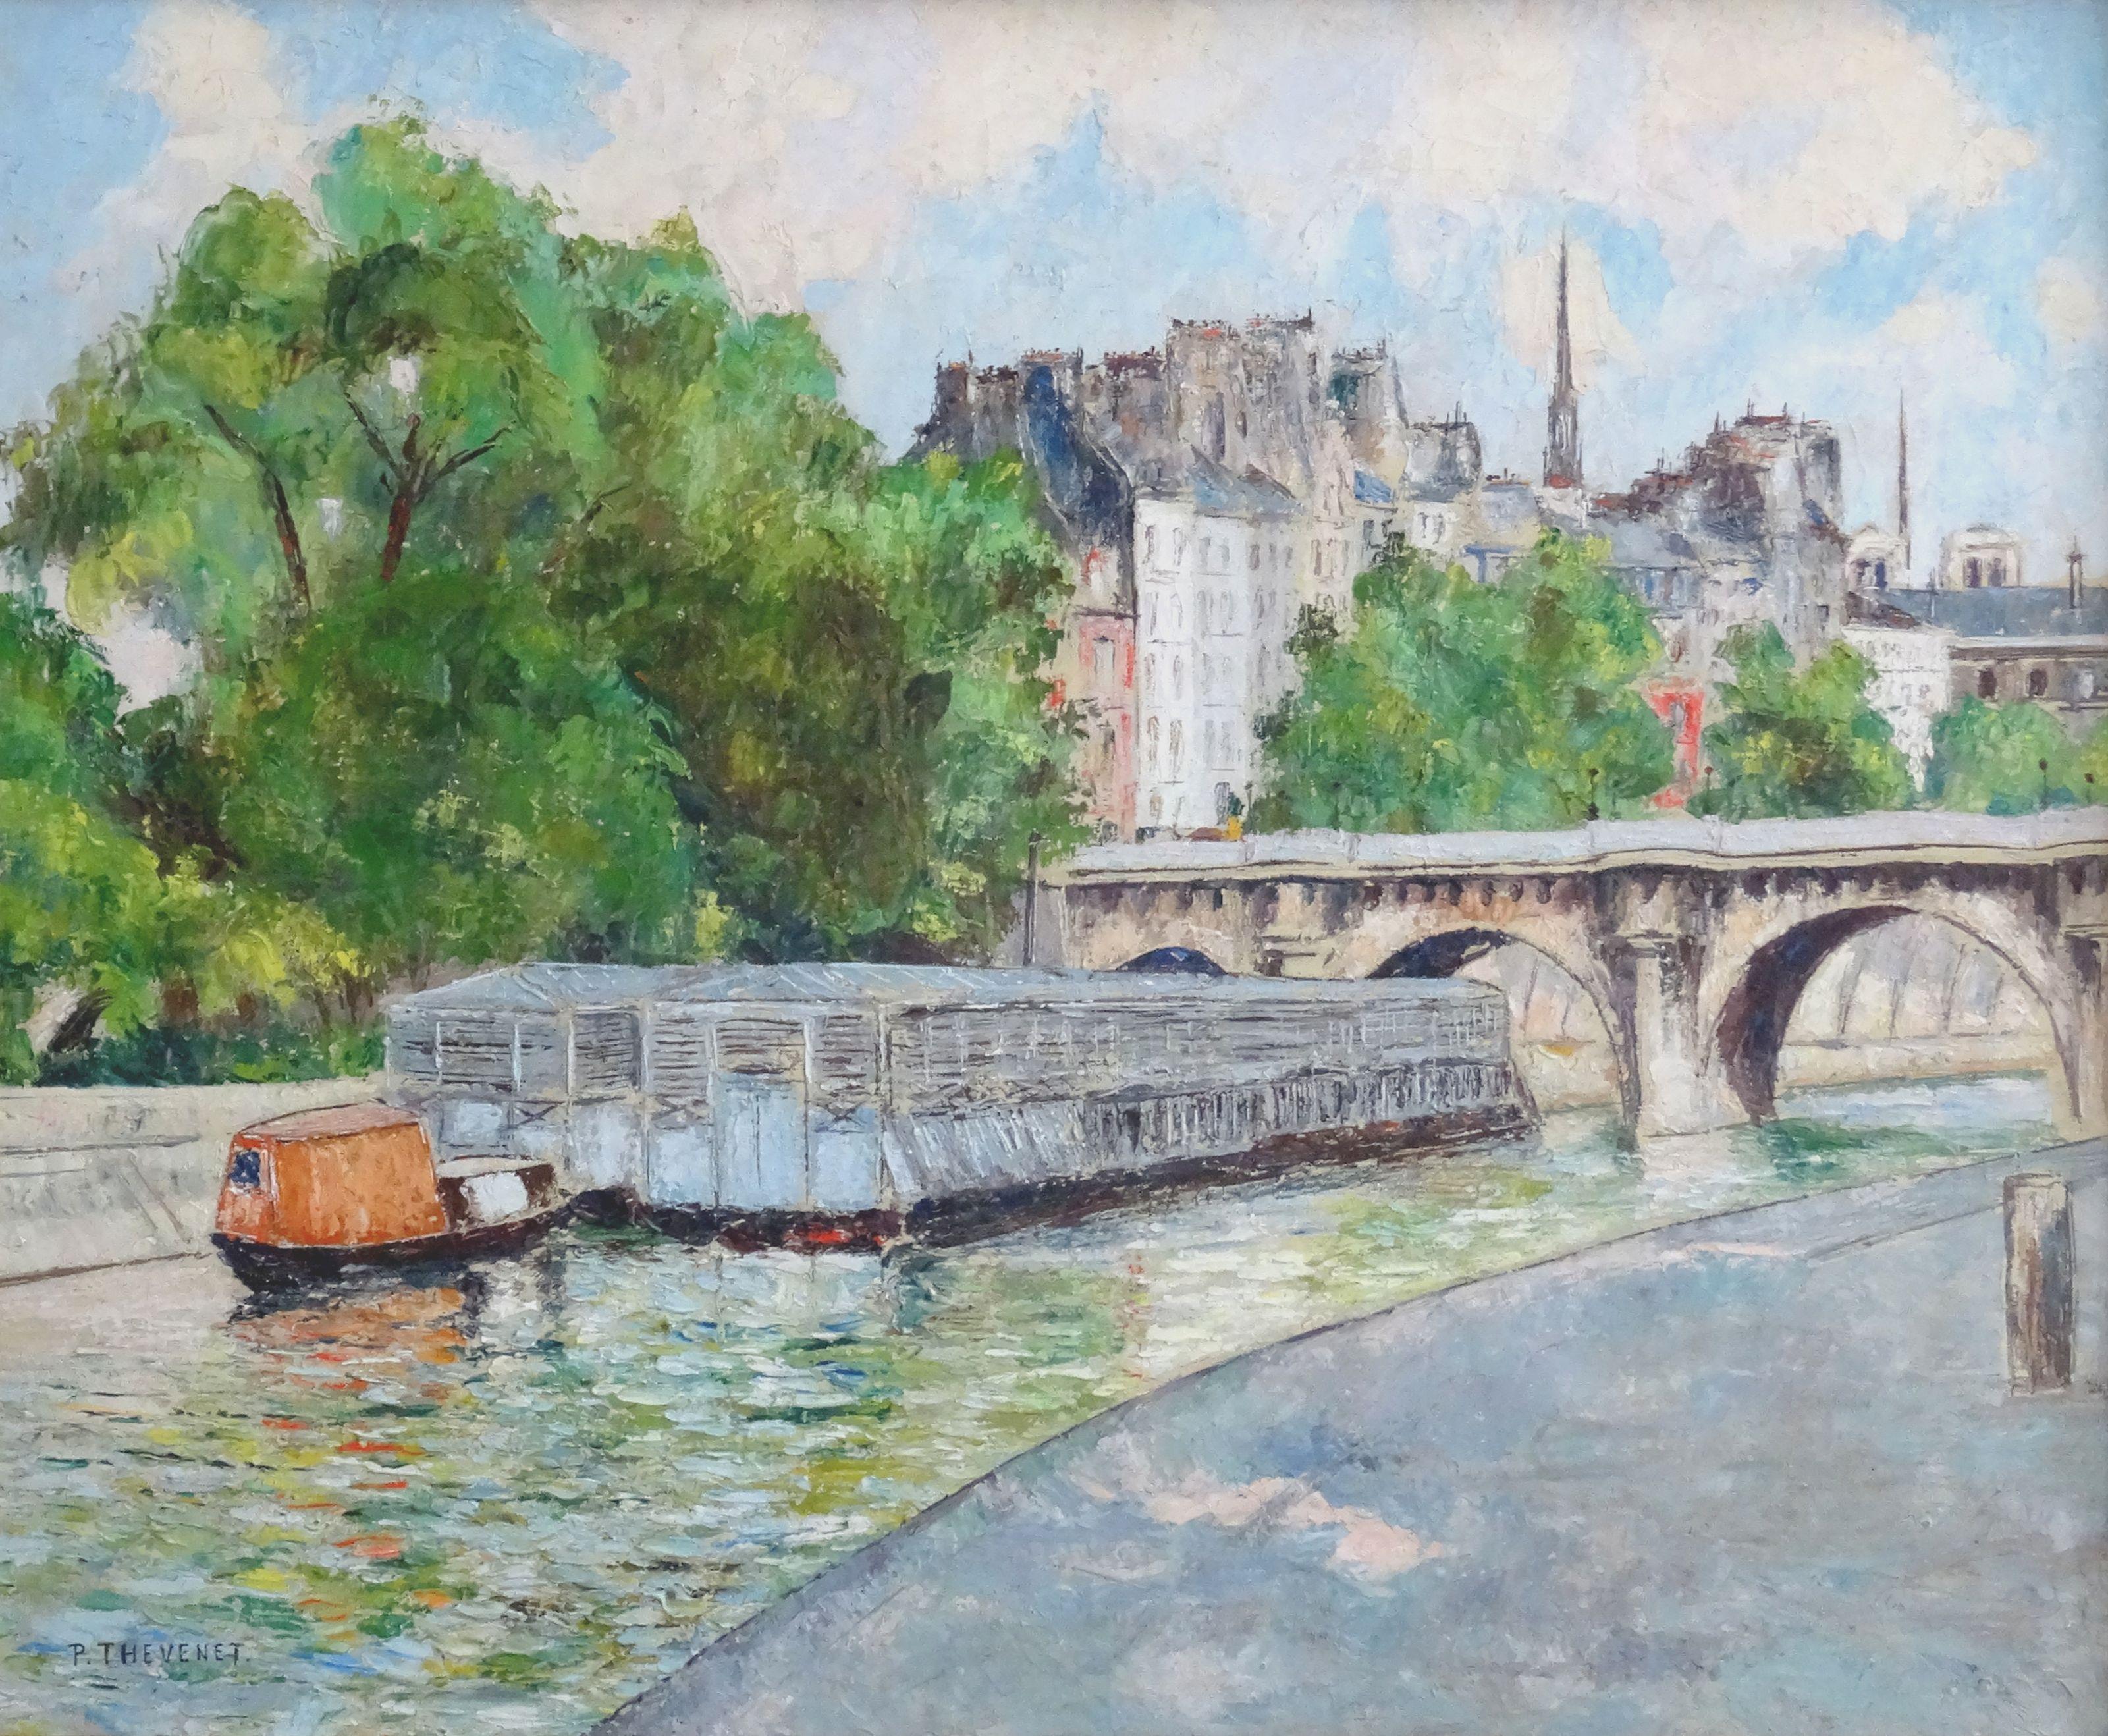 Pierre Thevenet Landscape Painting - The new bridge. Oil on canvas, 60, 5x70, 5 cm